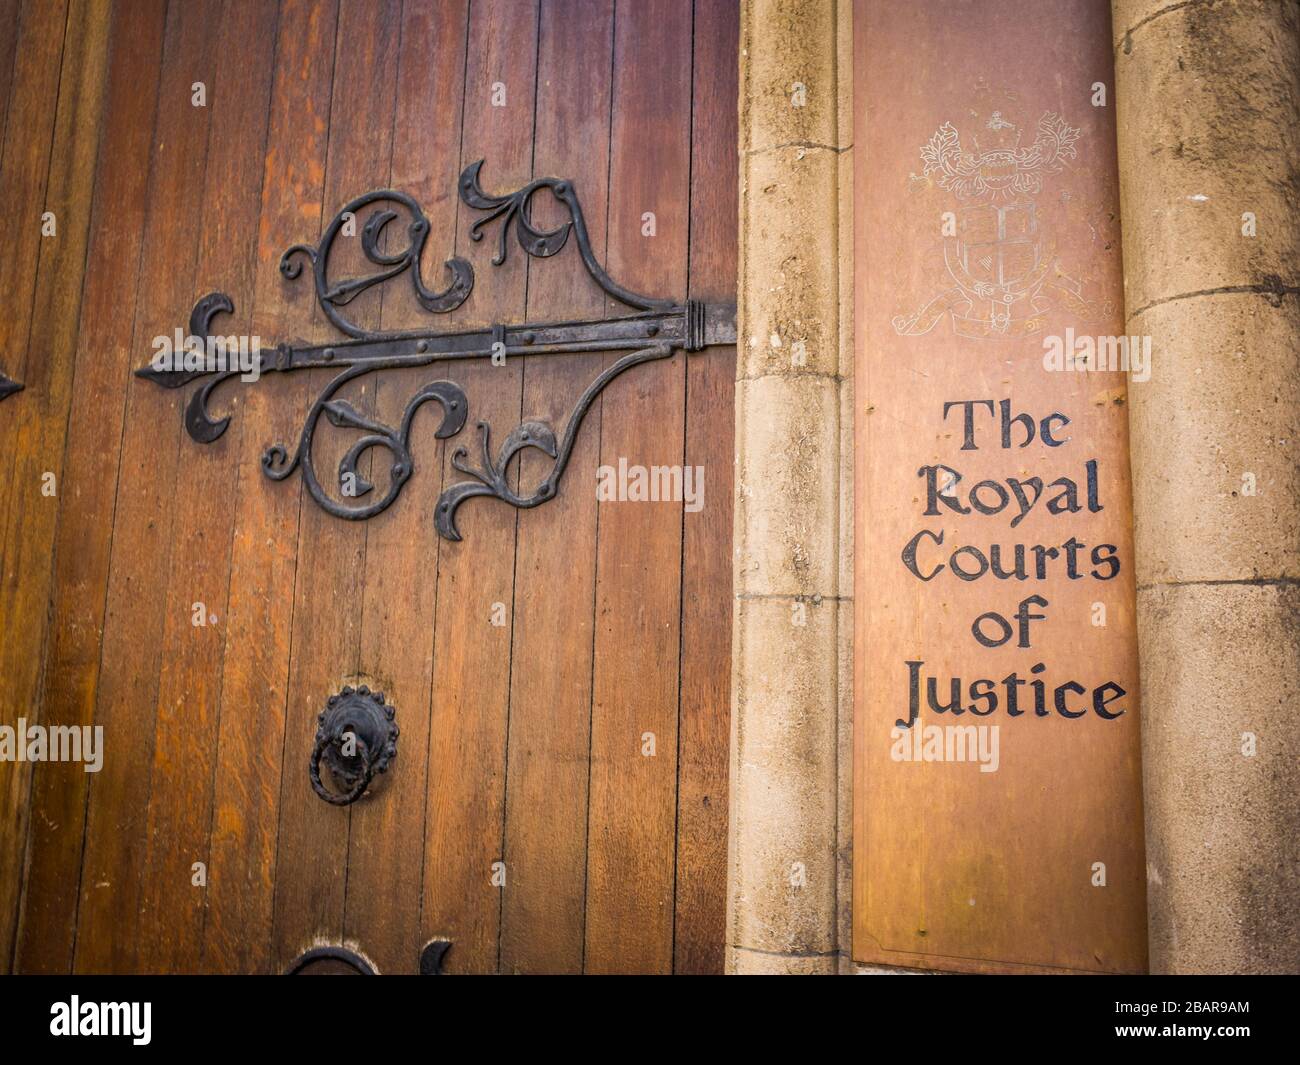 Les cours royales de justice, un bâtiment imposant de la cour de justice gothique abritant la Haute Cour et la Cour d'appel du Royaume-Uni Banque D'Images